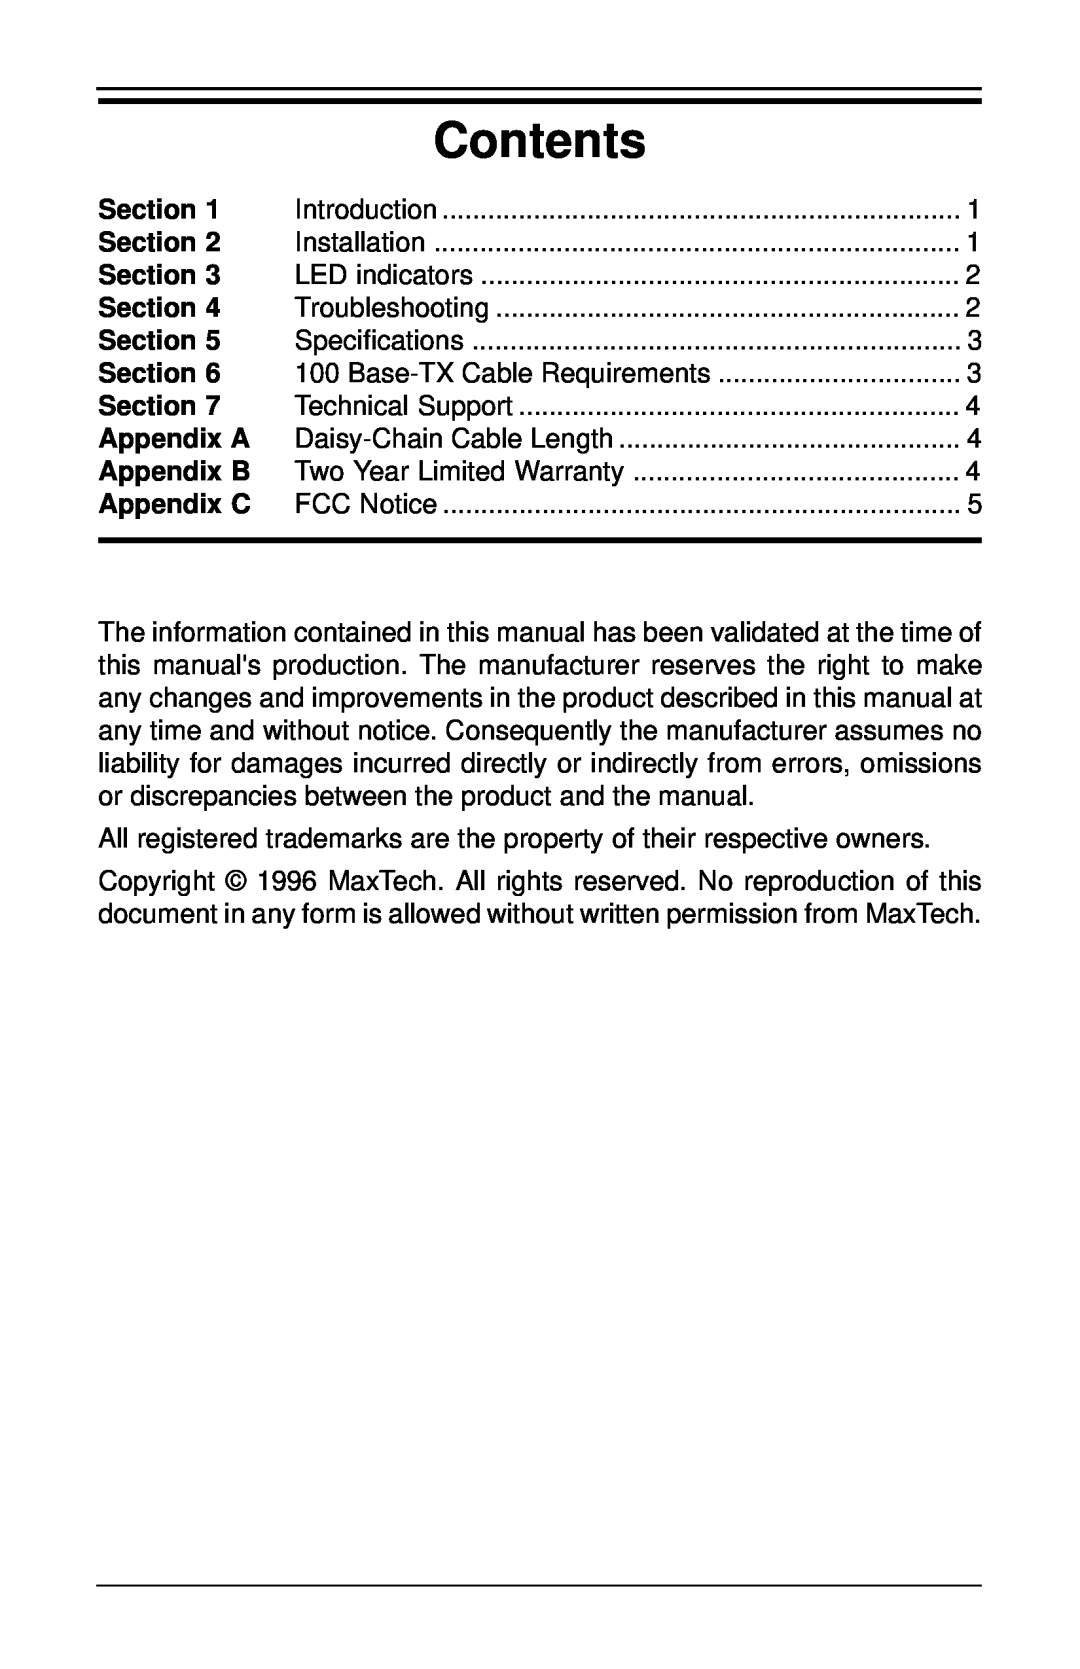 MaxTech FHX-8100 manual Section, Appendix C, Contents 